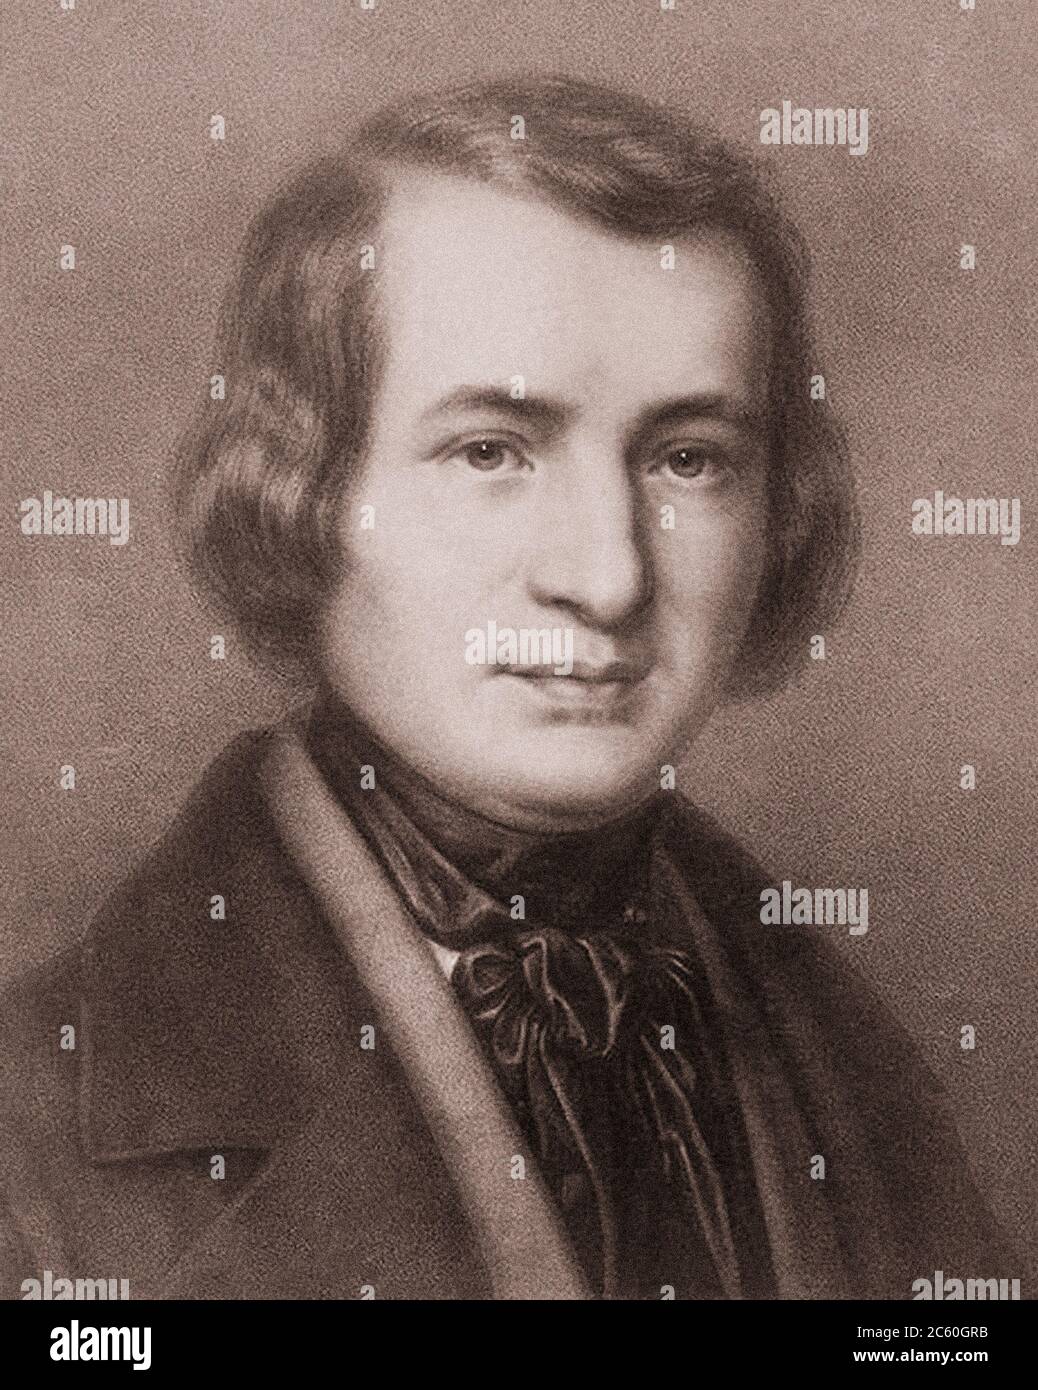 Christian Johann Heinrich Heine (1797 – 1856) war ein deutscher Dichter, Schriftsteller und Literaturkritiker. Außerhalb Deutschlands ist er vor allem für seinen frühen Lyriker bekannt Stockfoto